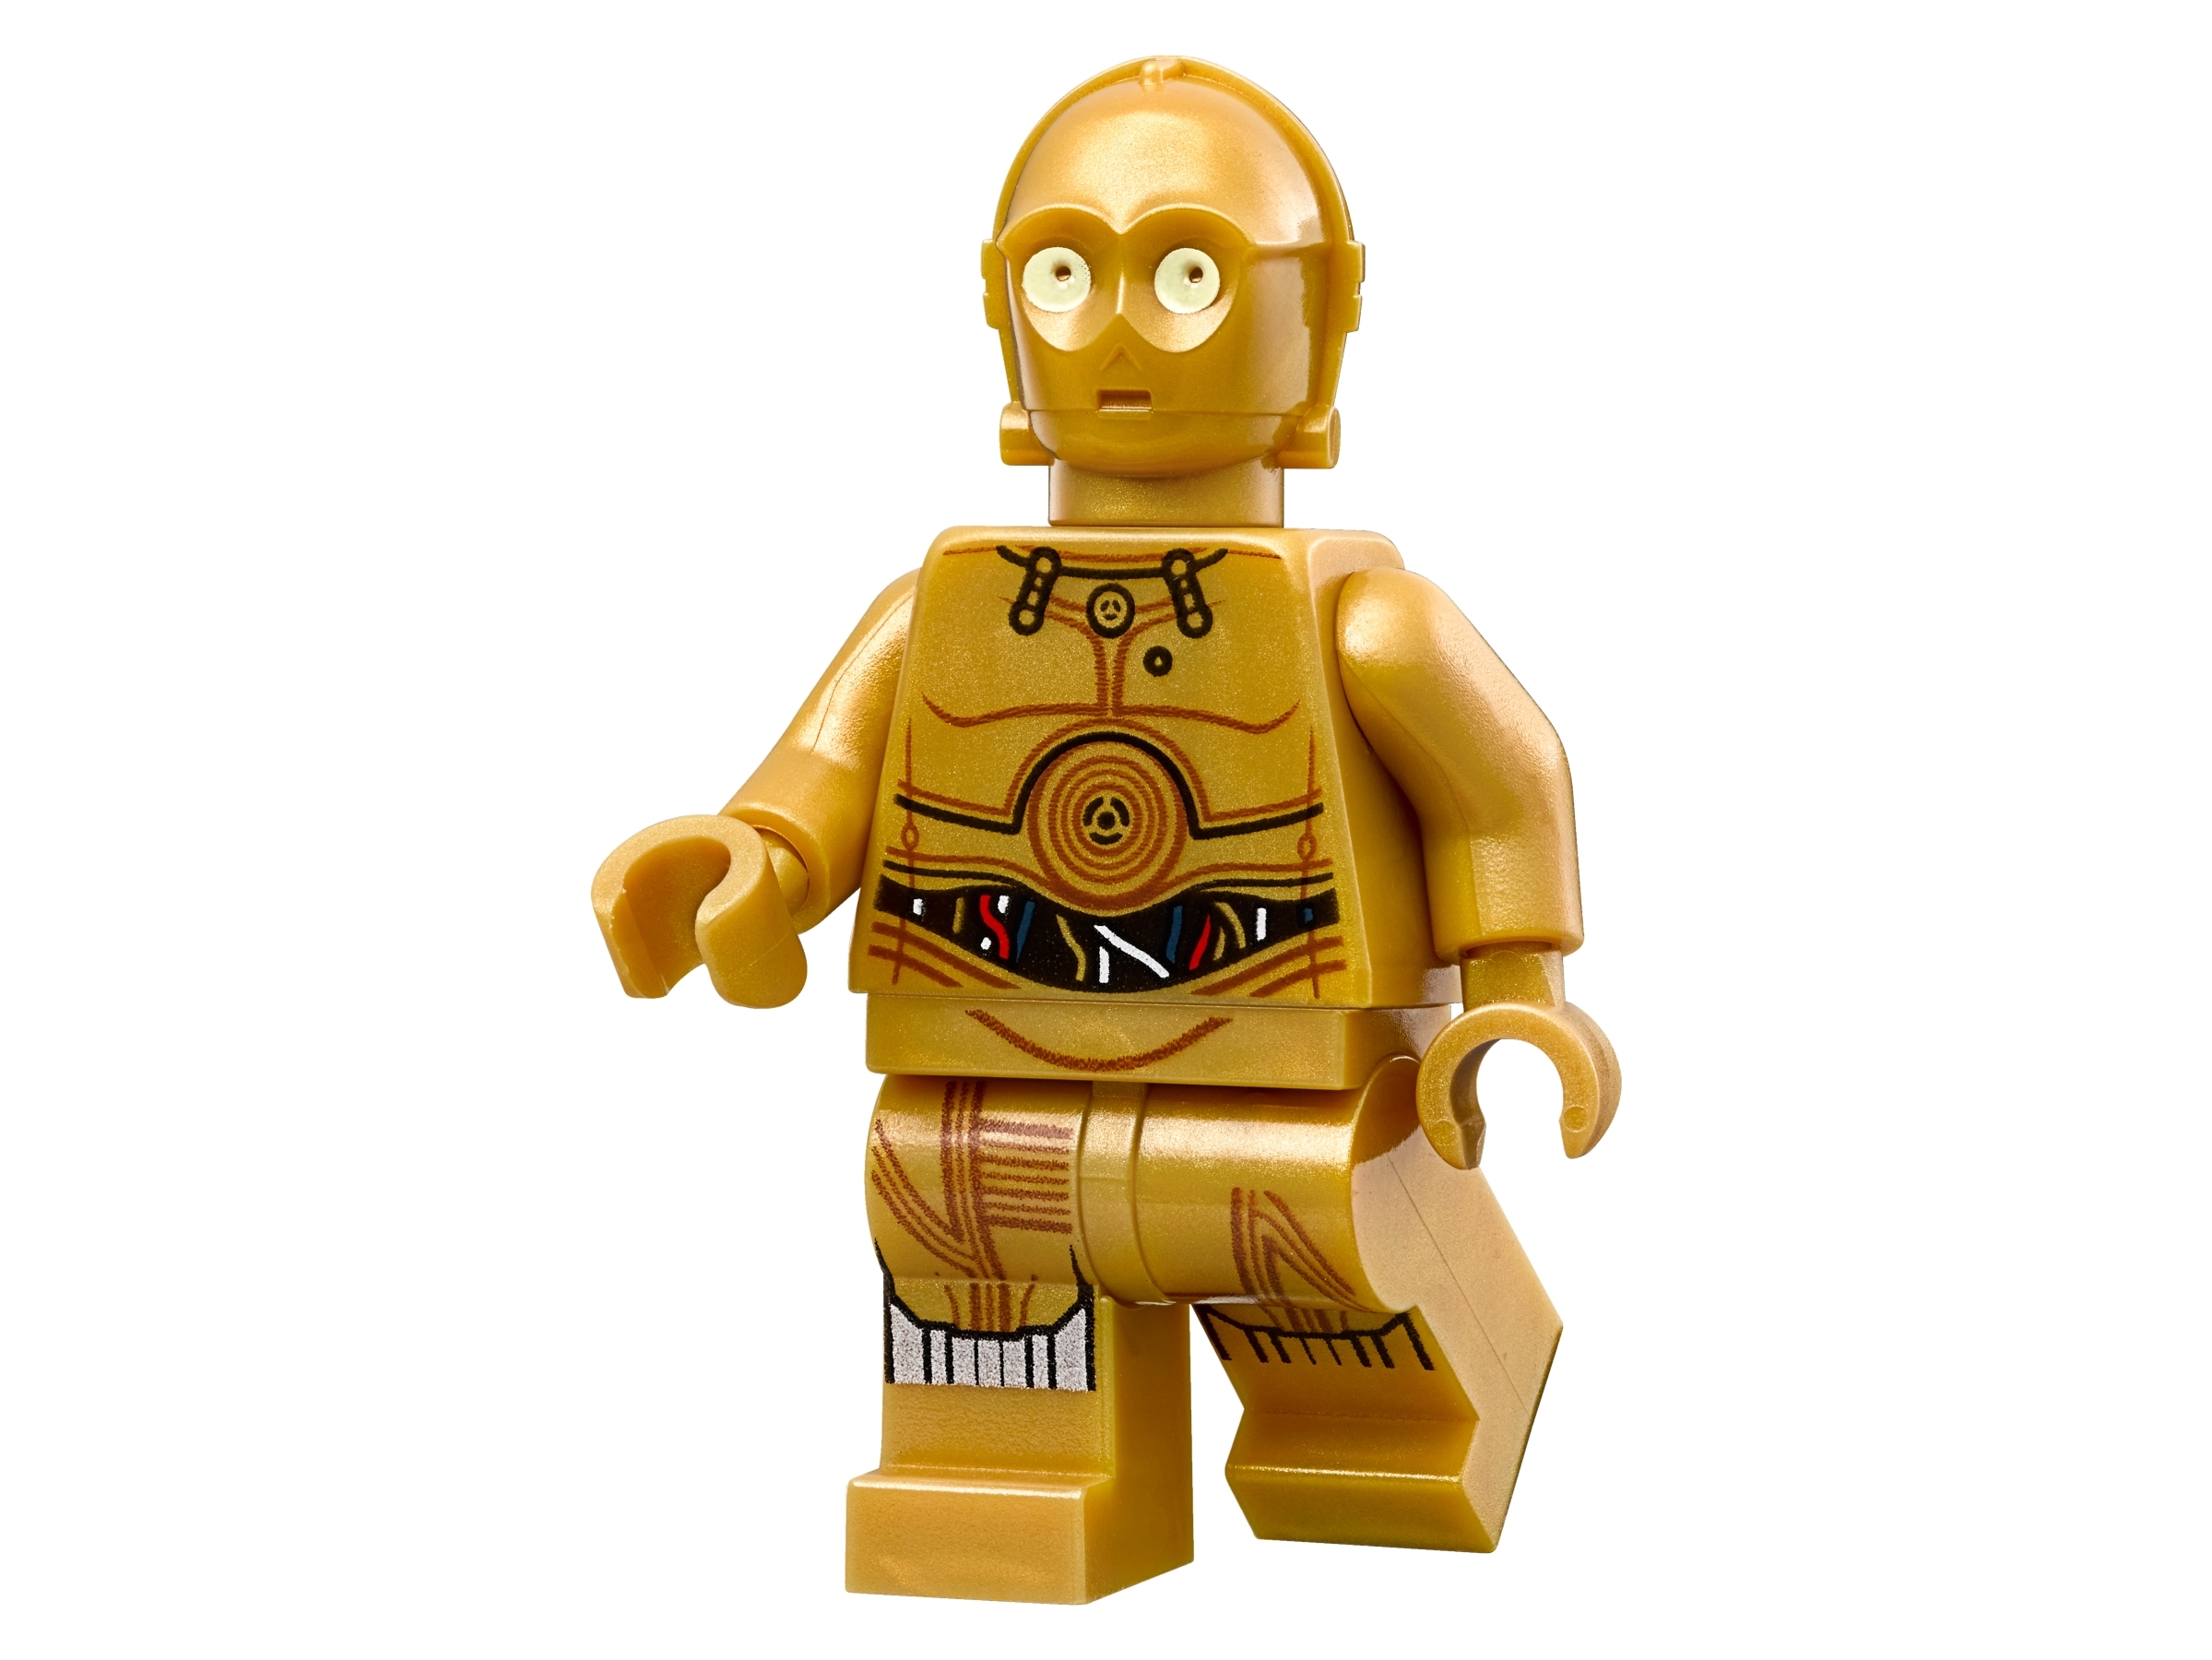 LEGO Star Wars 75173 Luke's Landspeeder BA ALLE Minifiguren **VOLLSTÄNDIG**